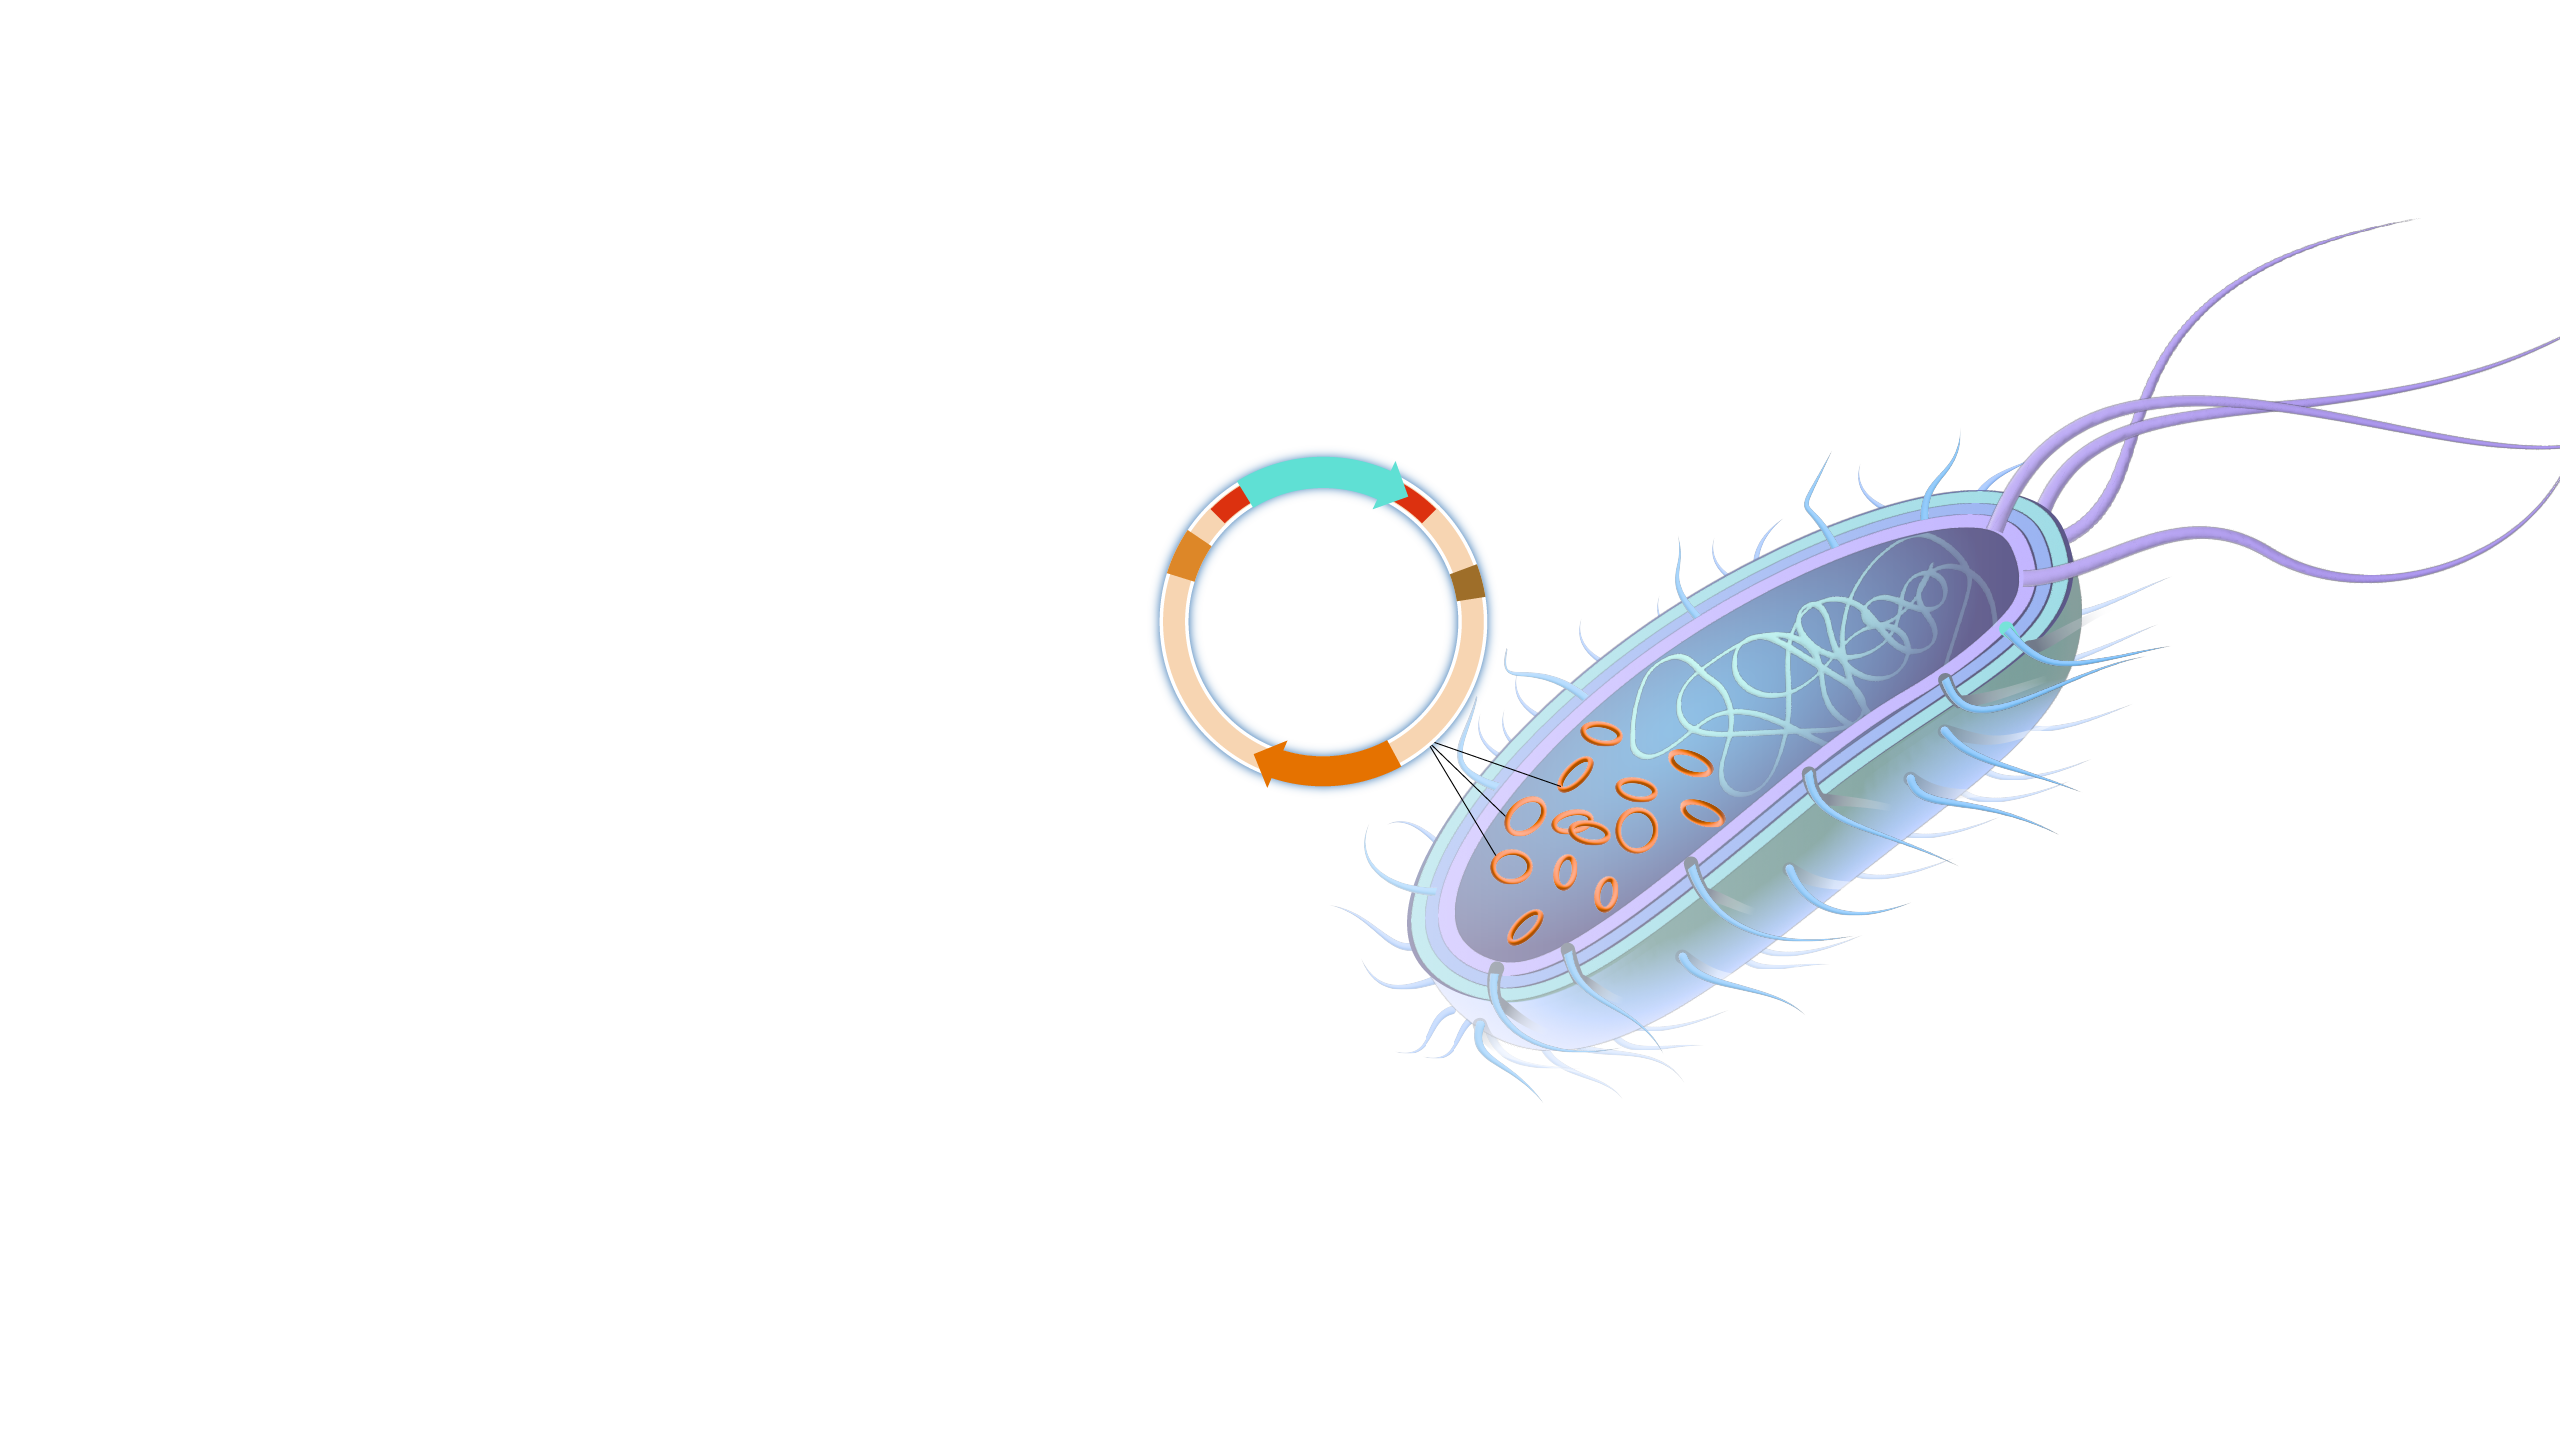 plasmid in bacteria